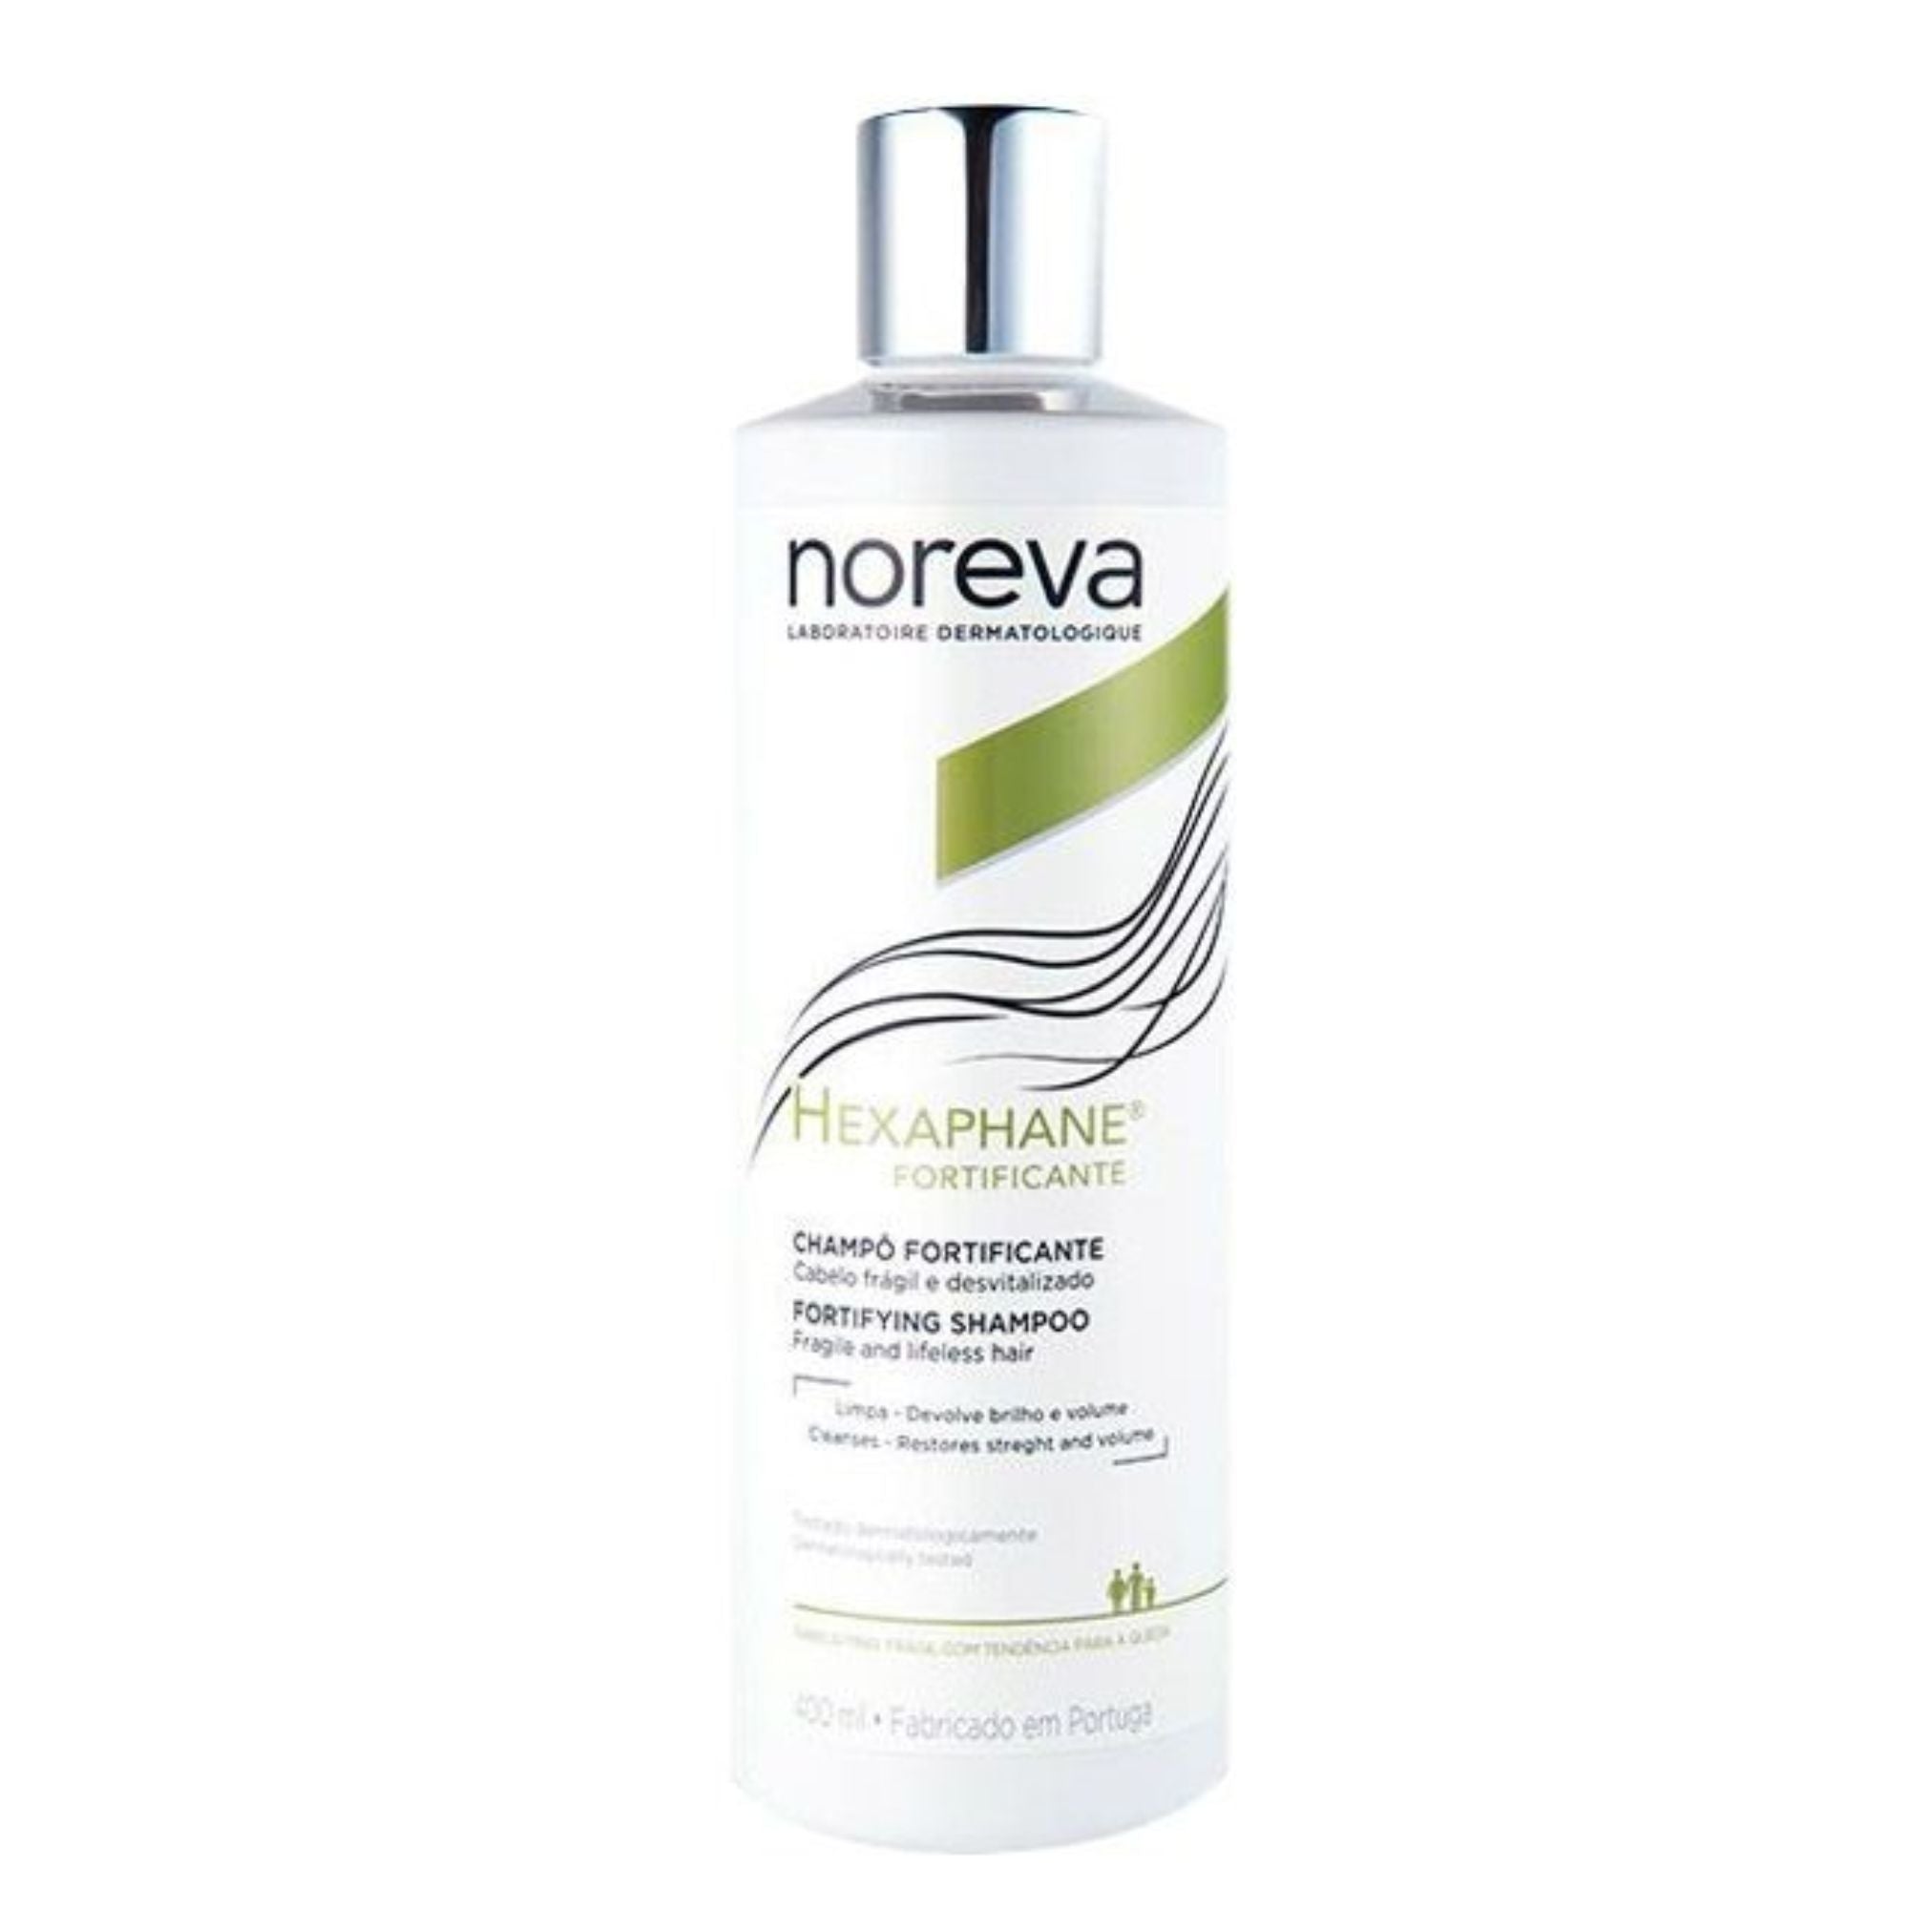 Noreva Hexaphane shampoo fortificante 400ml